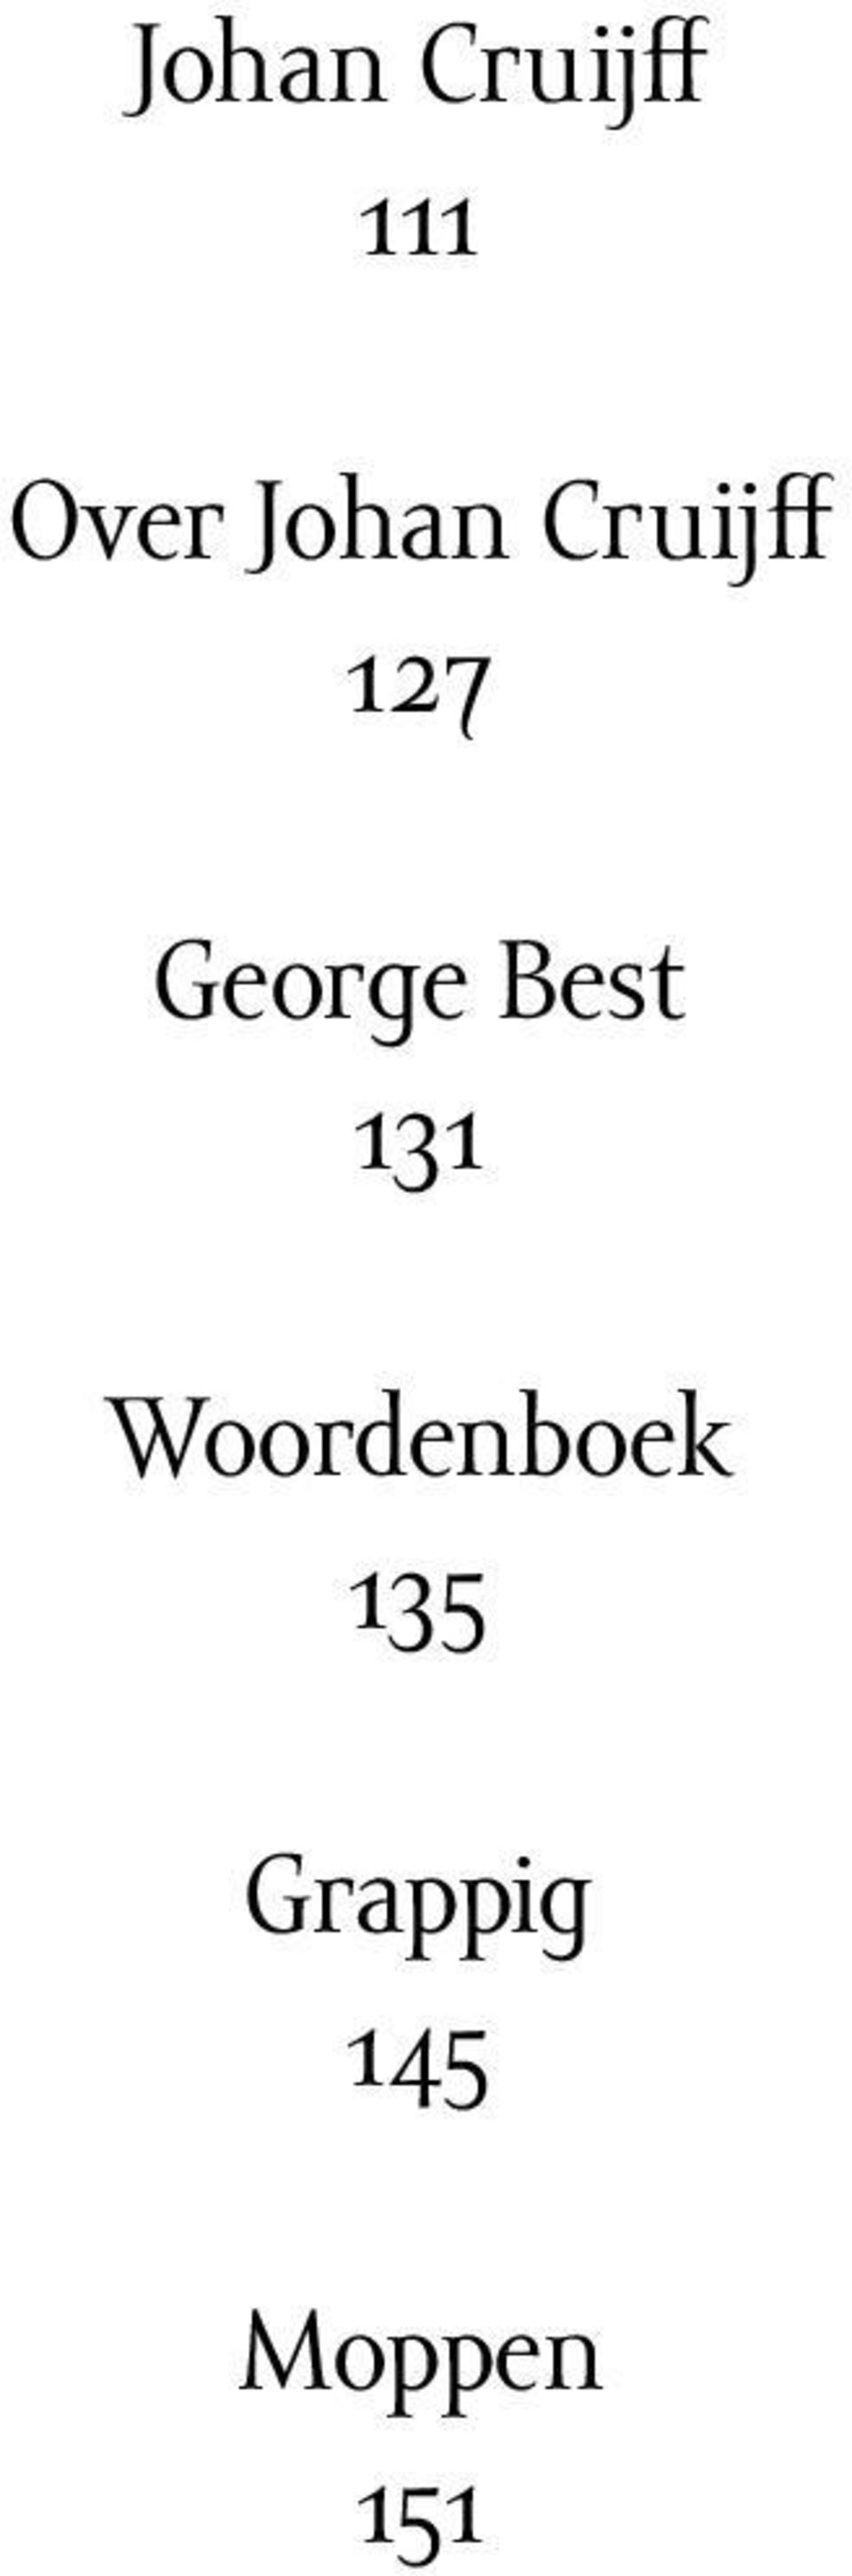 George Best 131